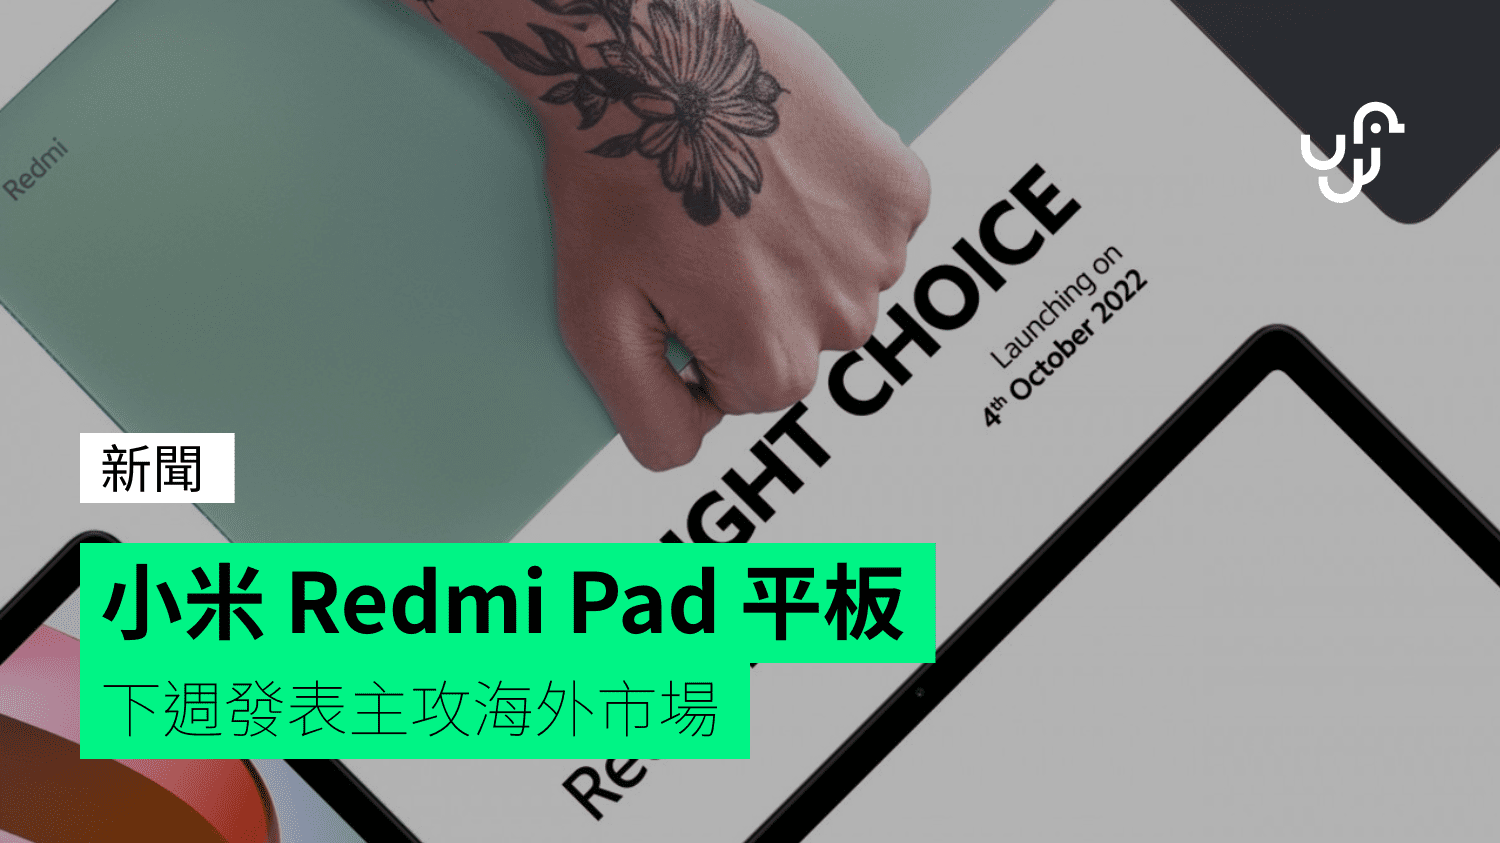 小米 Redmi Pad 平板 下週發表主攻海外市場 - 香港 unwire.hk